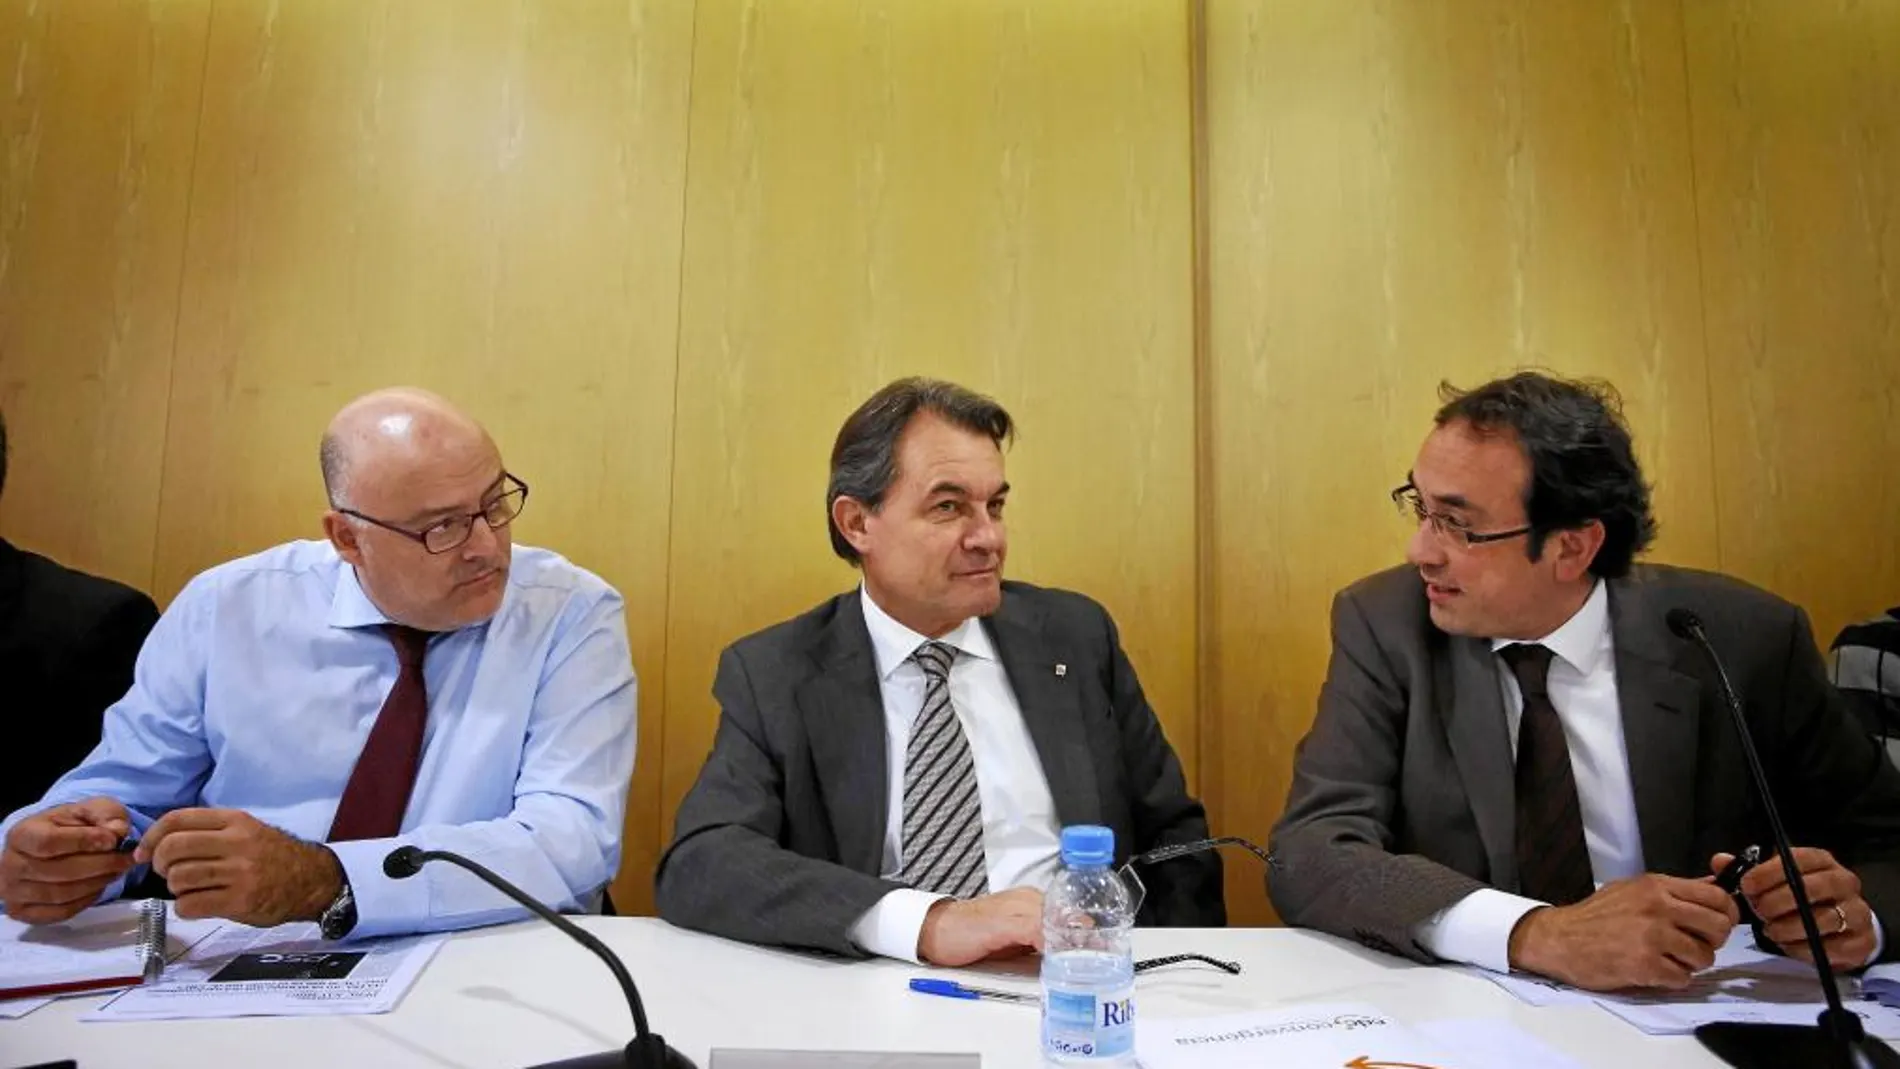 Mas presidió ayer la reunión del comité ejecutivo de Convergència Democràtica